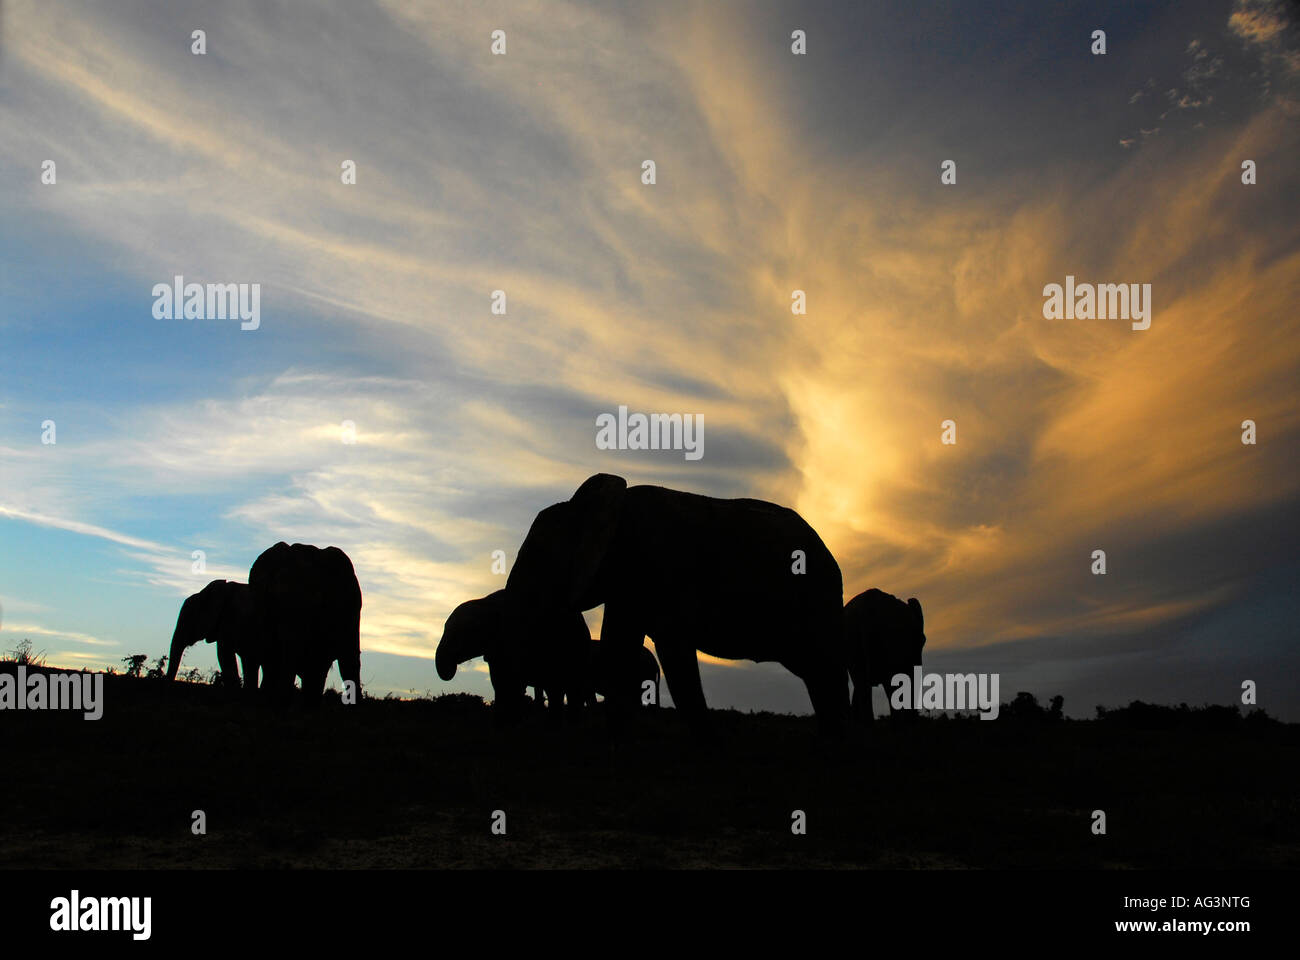 Silhouette de la famille éléphant contre skyline après le coucher du soleil, l'Addo Elephant National Park, Afrique du Sud Banque D'Images